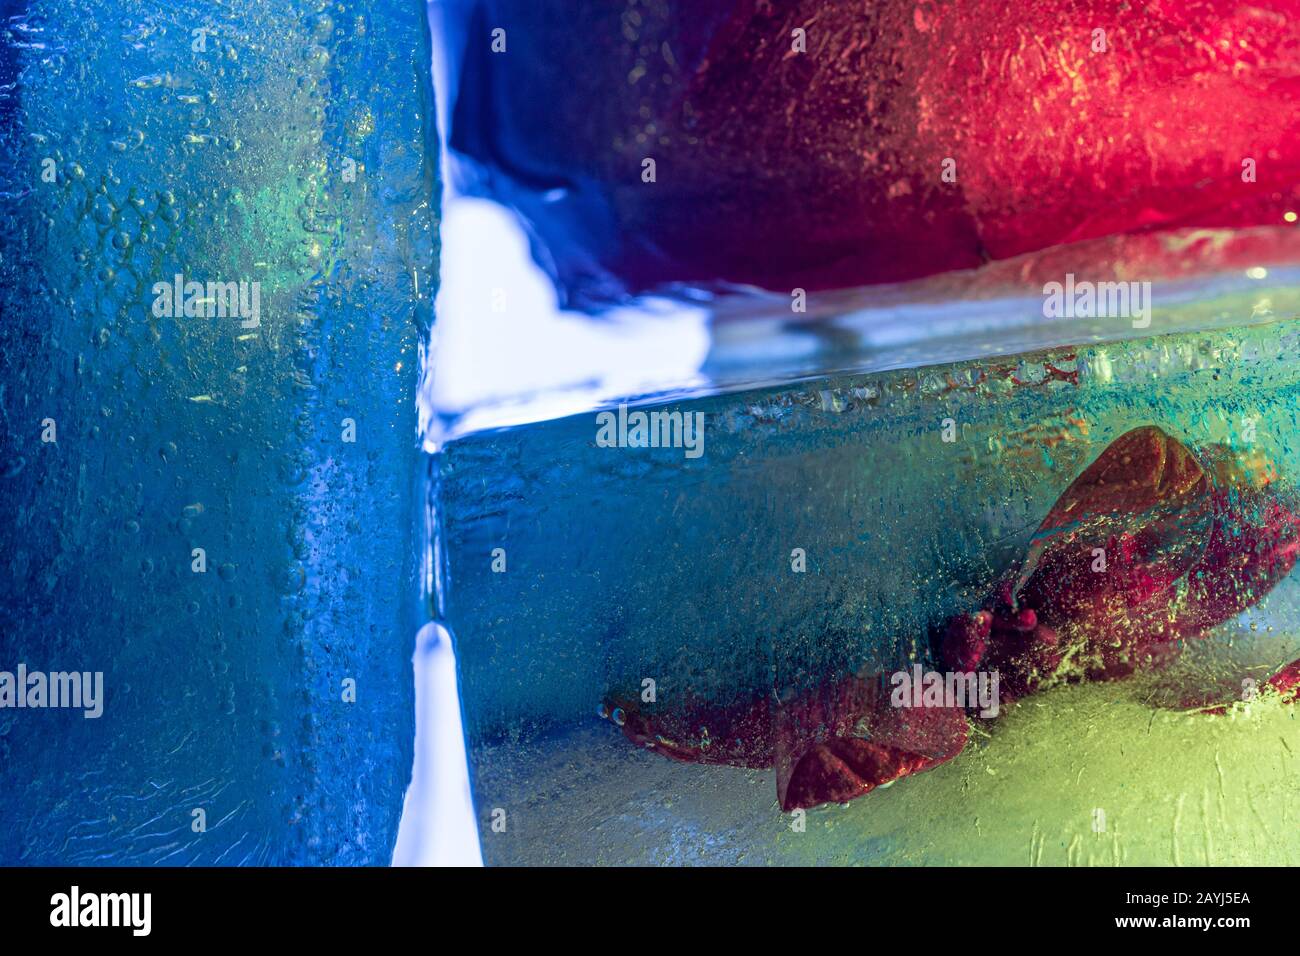 Composizione astratta con coloratissimi cubetti di ghiaccio dai toni vivaci Foto Stock